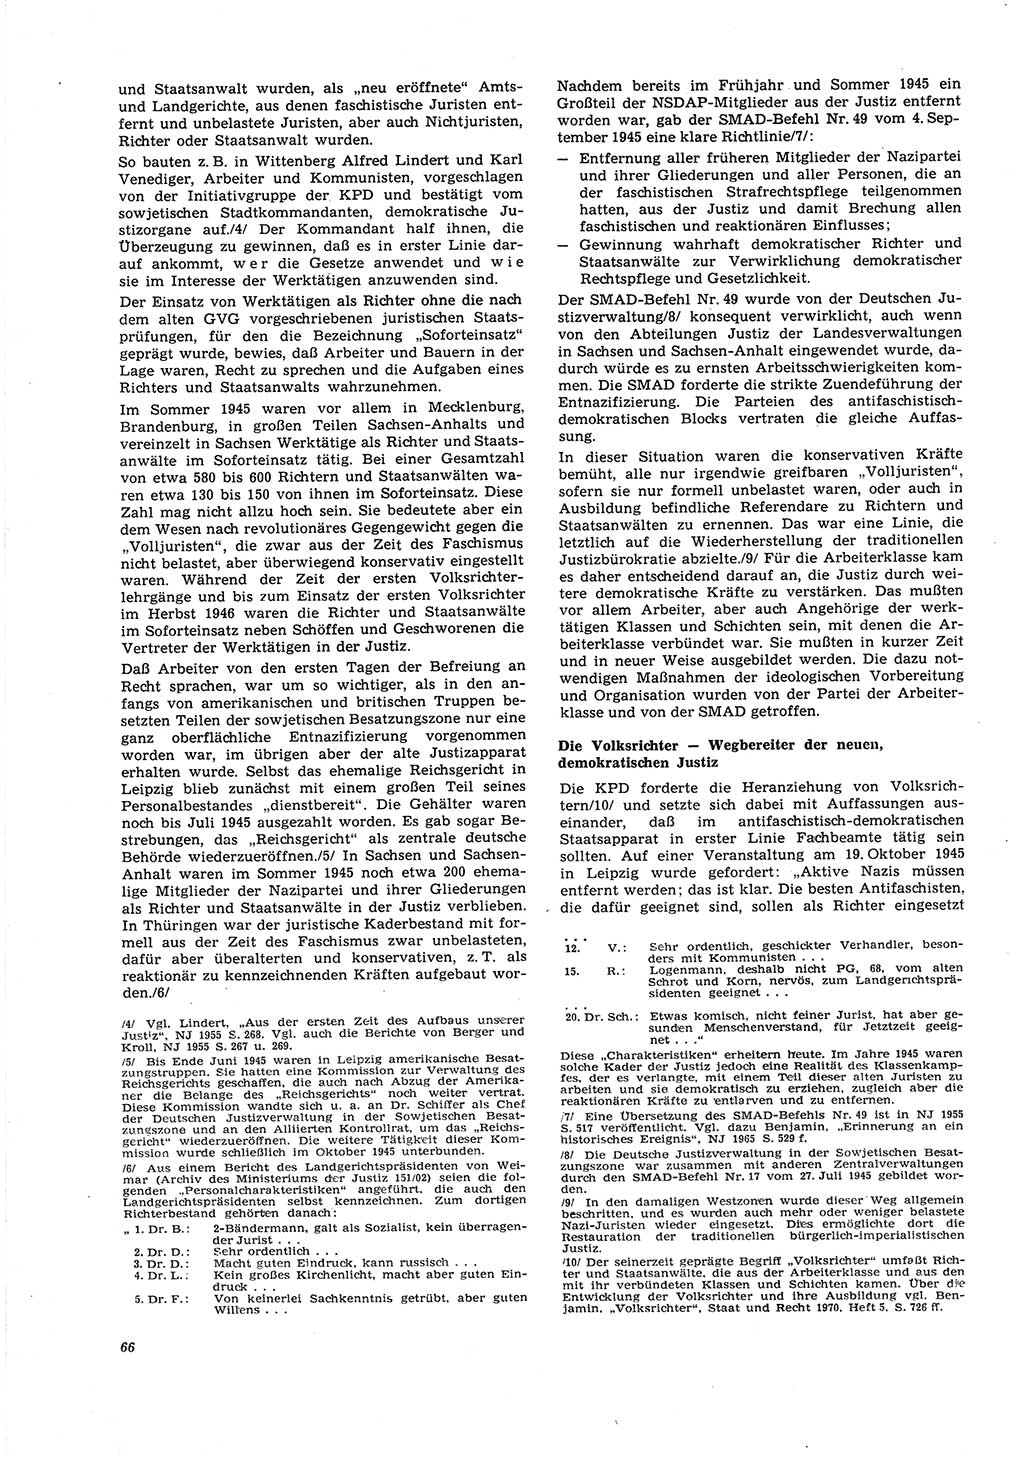 Neue Justiz (NJ), Zeitschrift für Recht und Rechtswissenschaft [Deutsche Demokratische Republik (DDR)], 27. Jahrgang 1973, Seite 66 (NJ DDR 1973, S. 66)